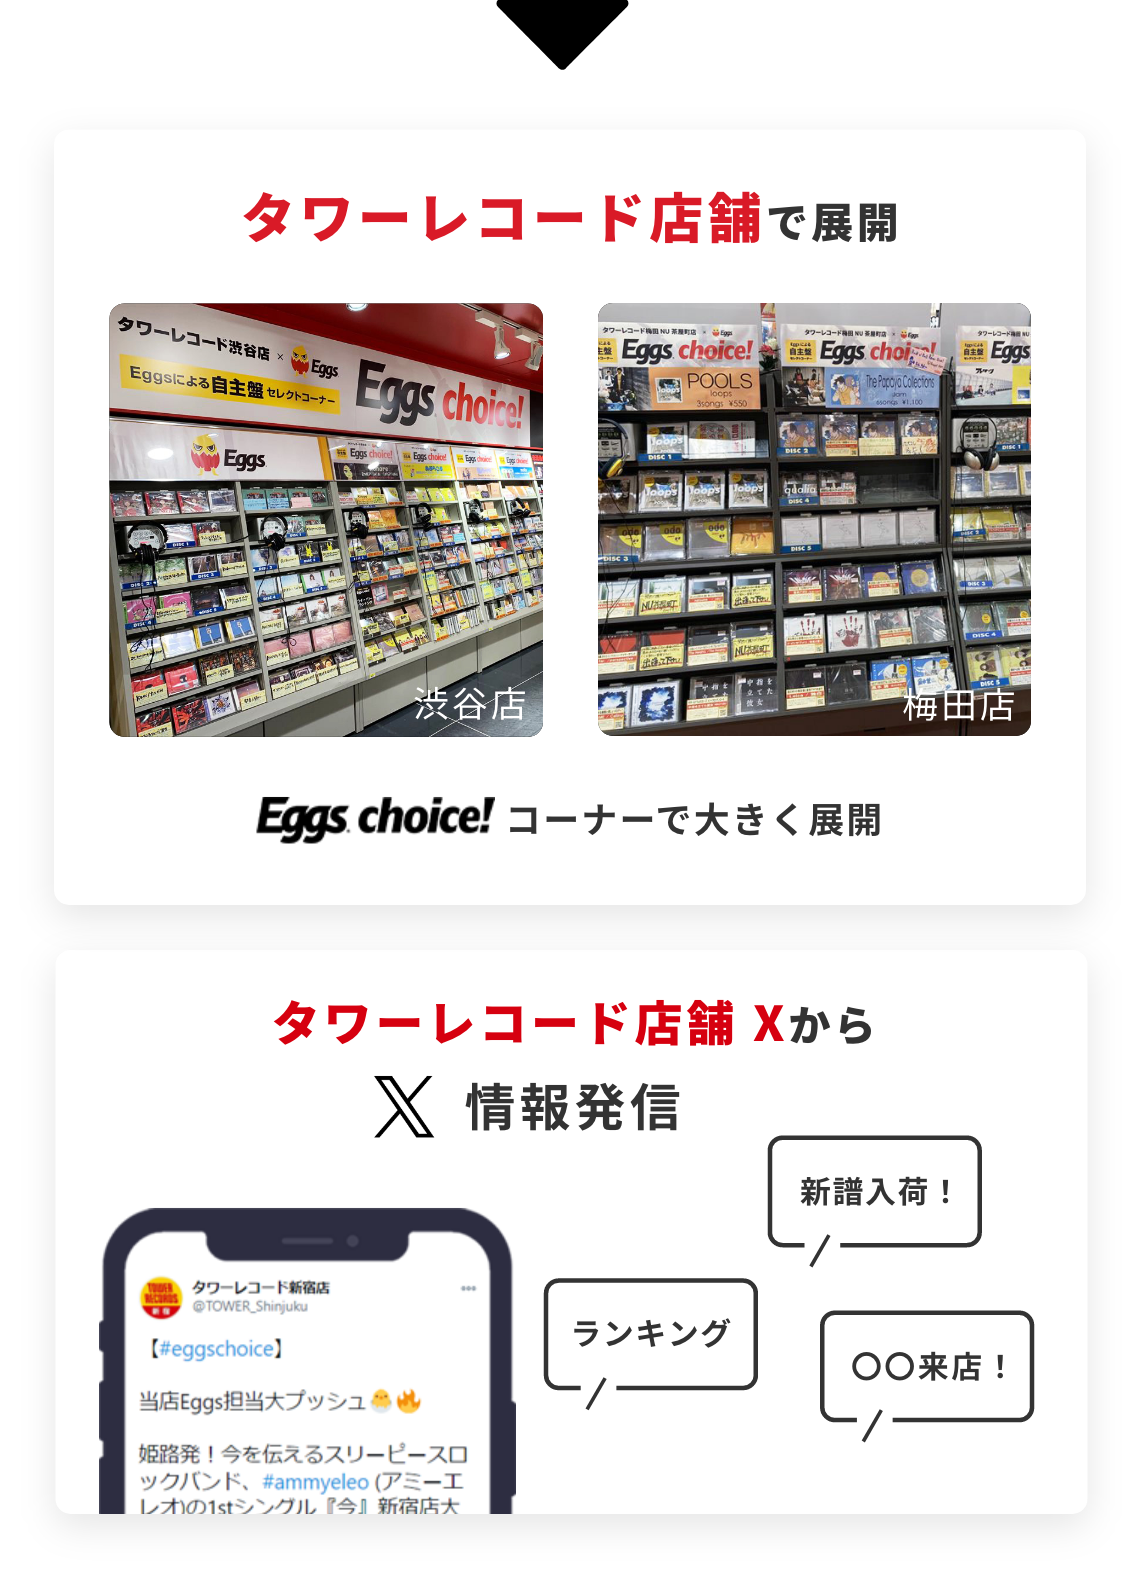 タワーレコード店舗（渋谷店、梅田店など）のEggs choice!コーナーで大きく展開。／タワーレコード店舗Xから、ランキング・新譜入荷・来店の情報発信。